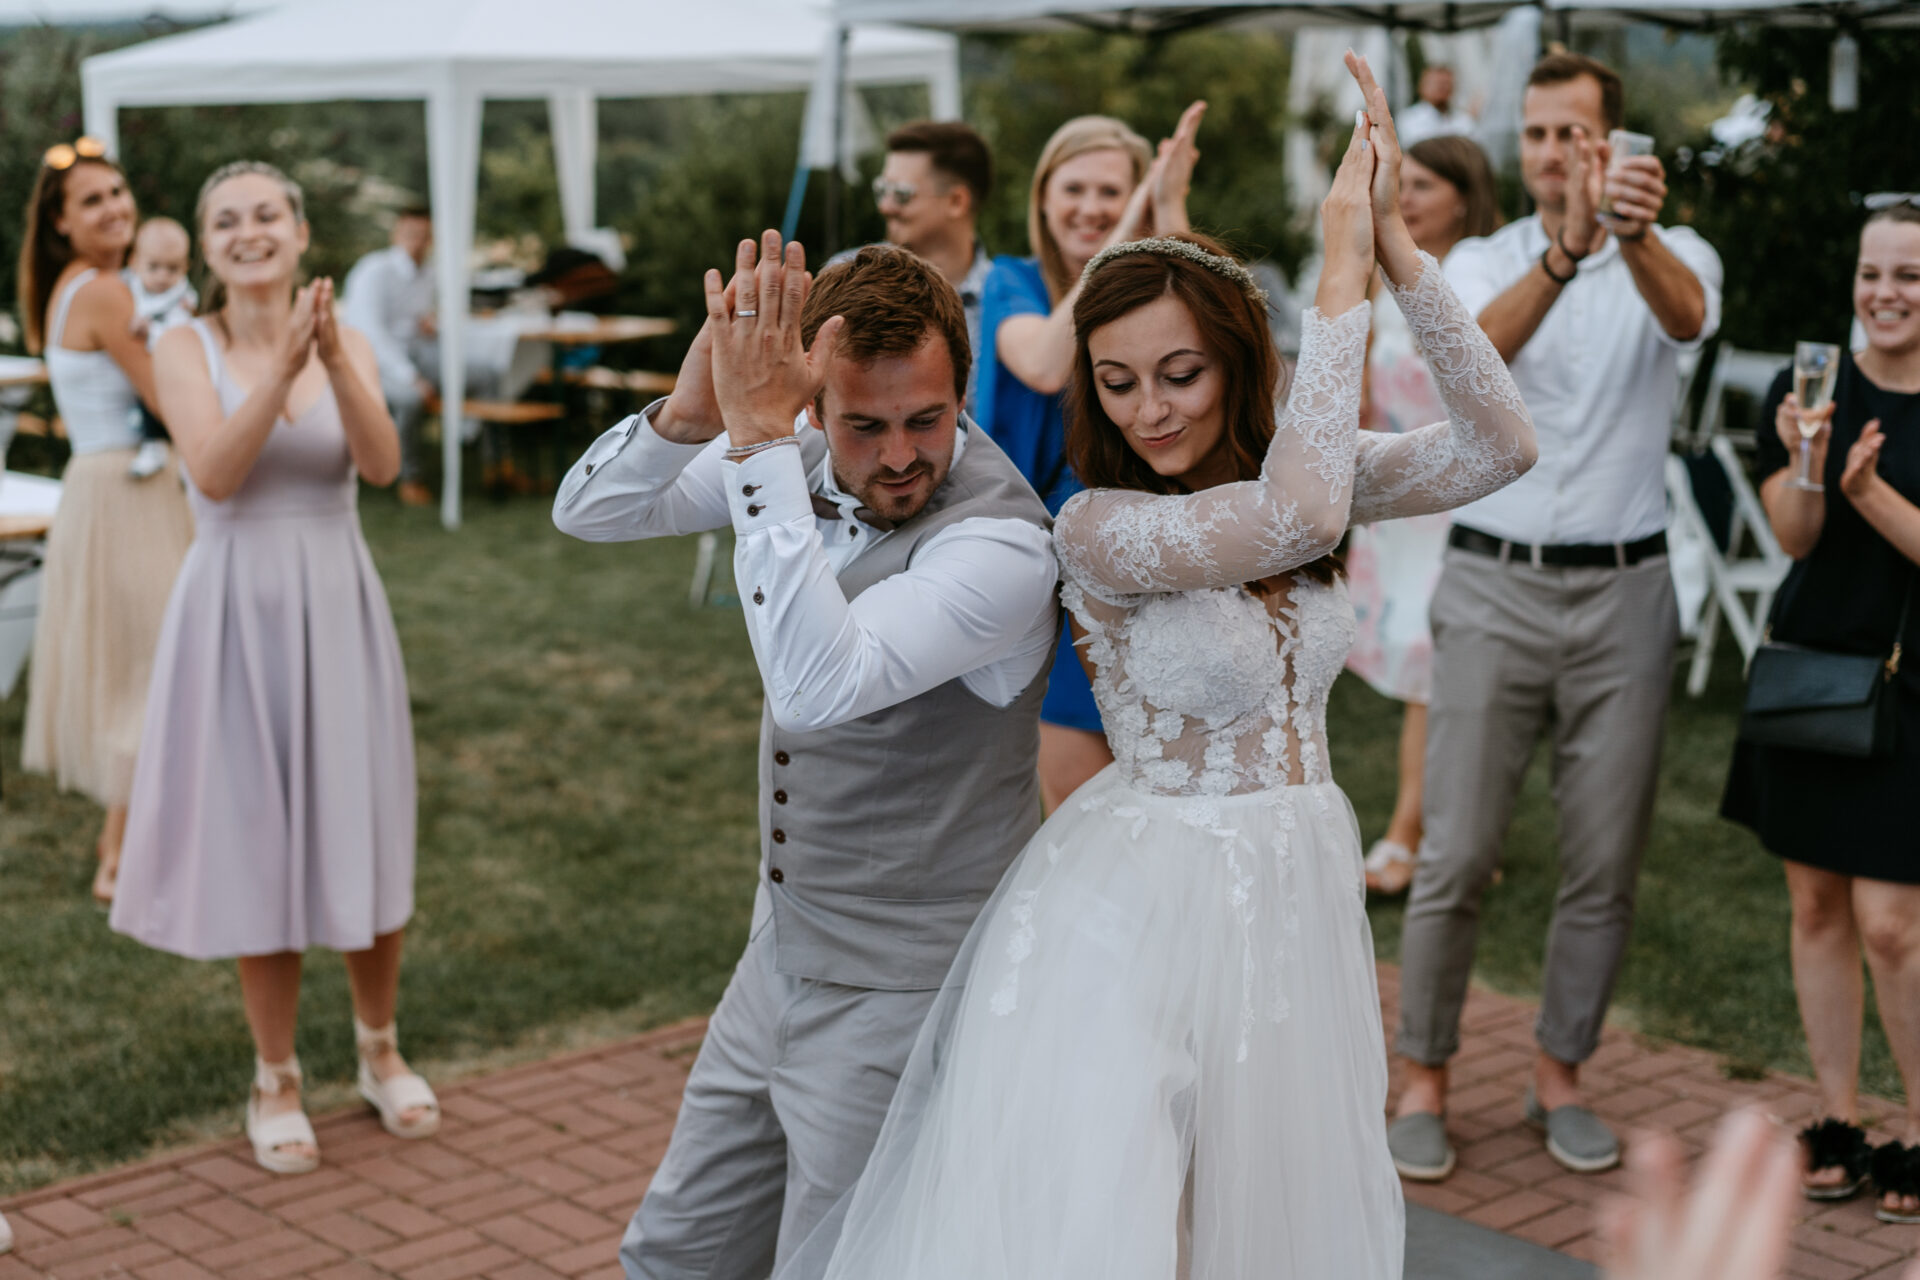 Svatební fotograf - svatební fotografie nevěsta a ženich při tanci